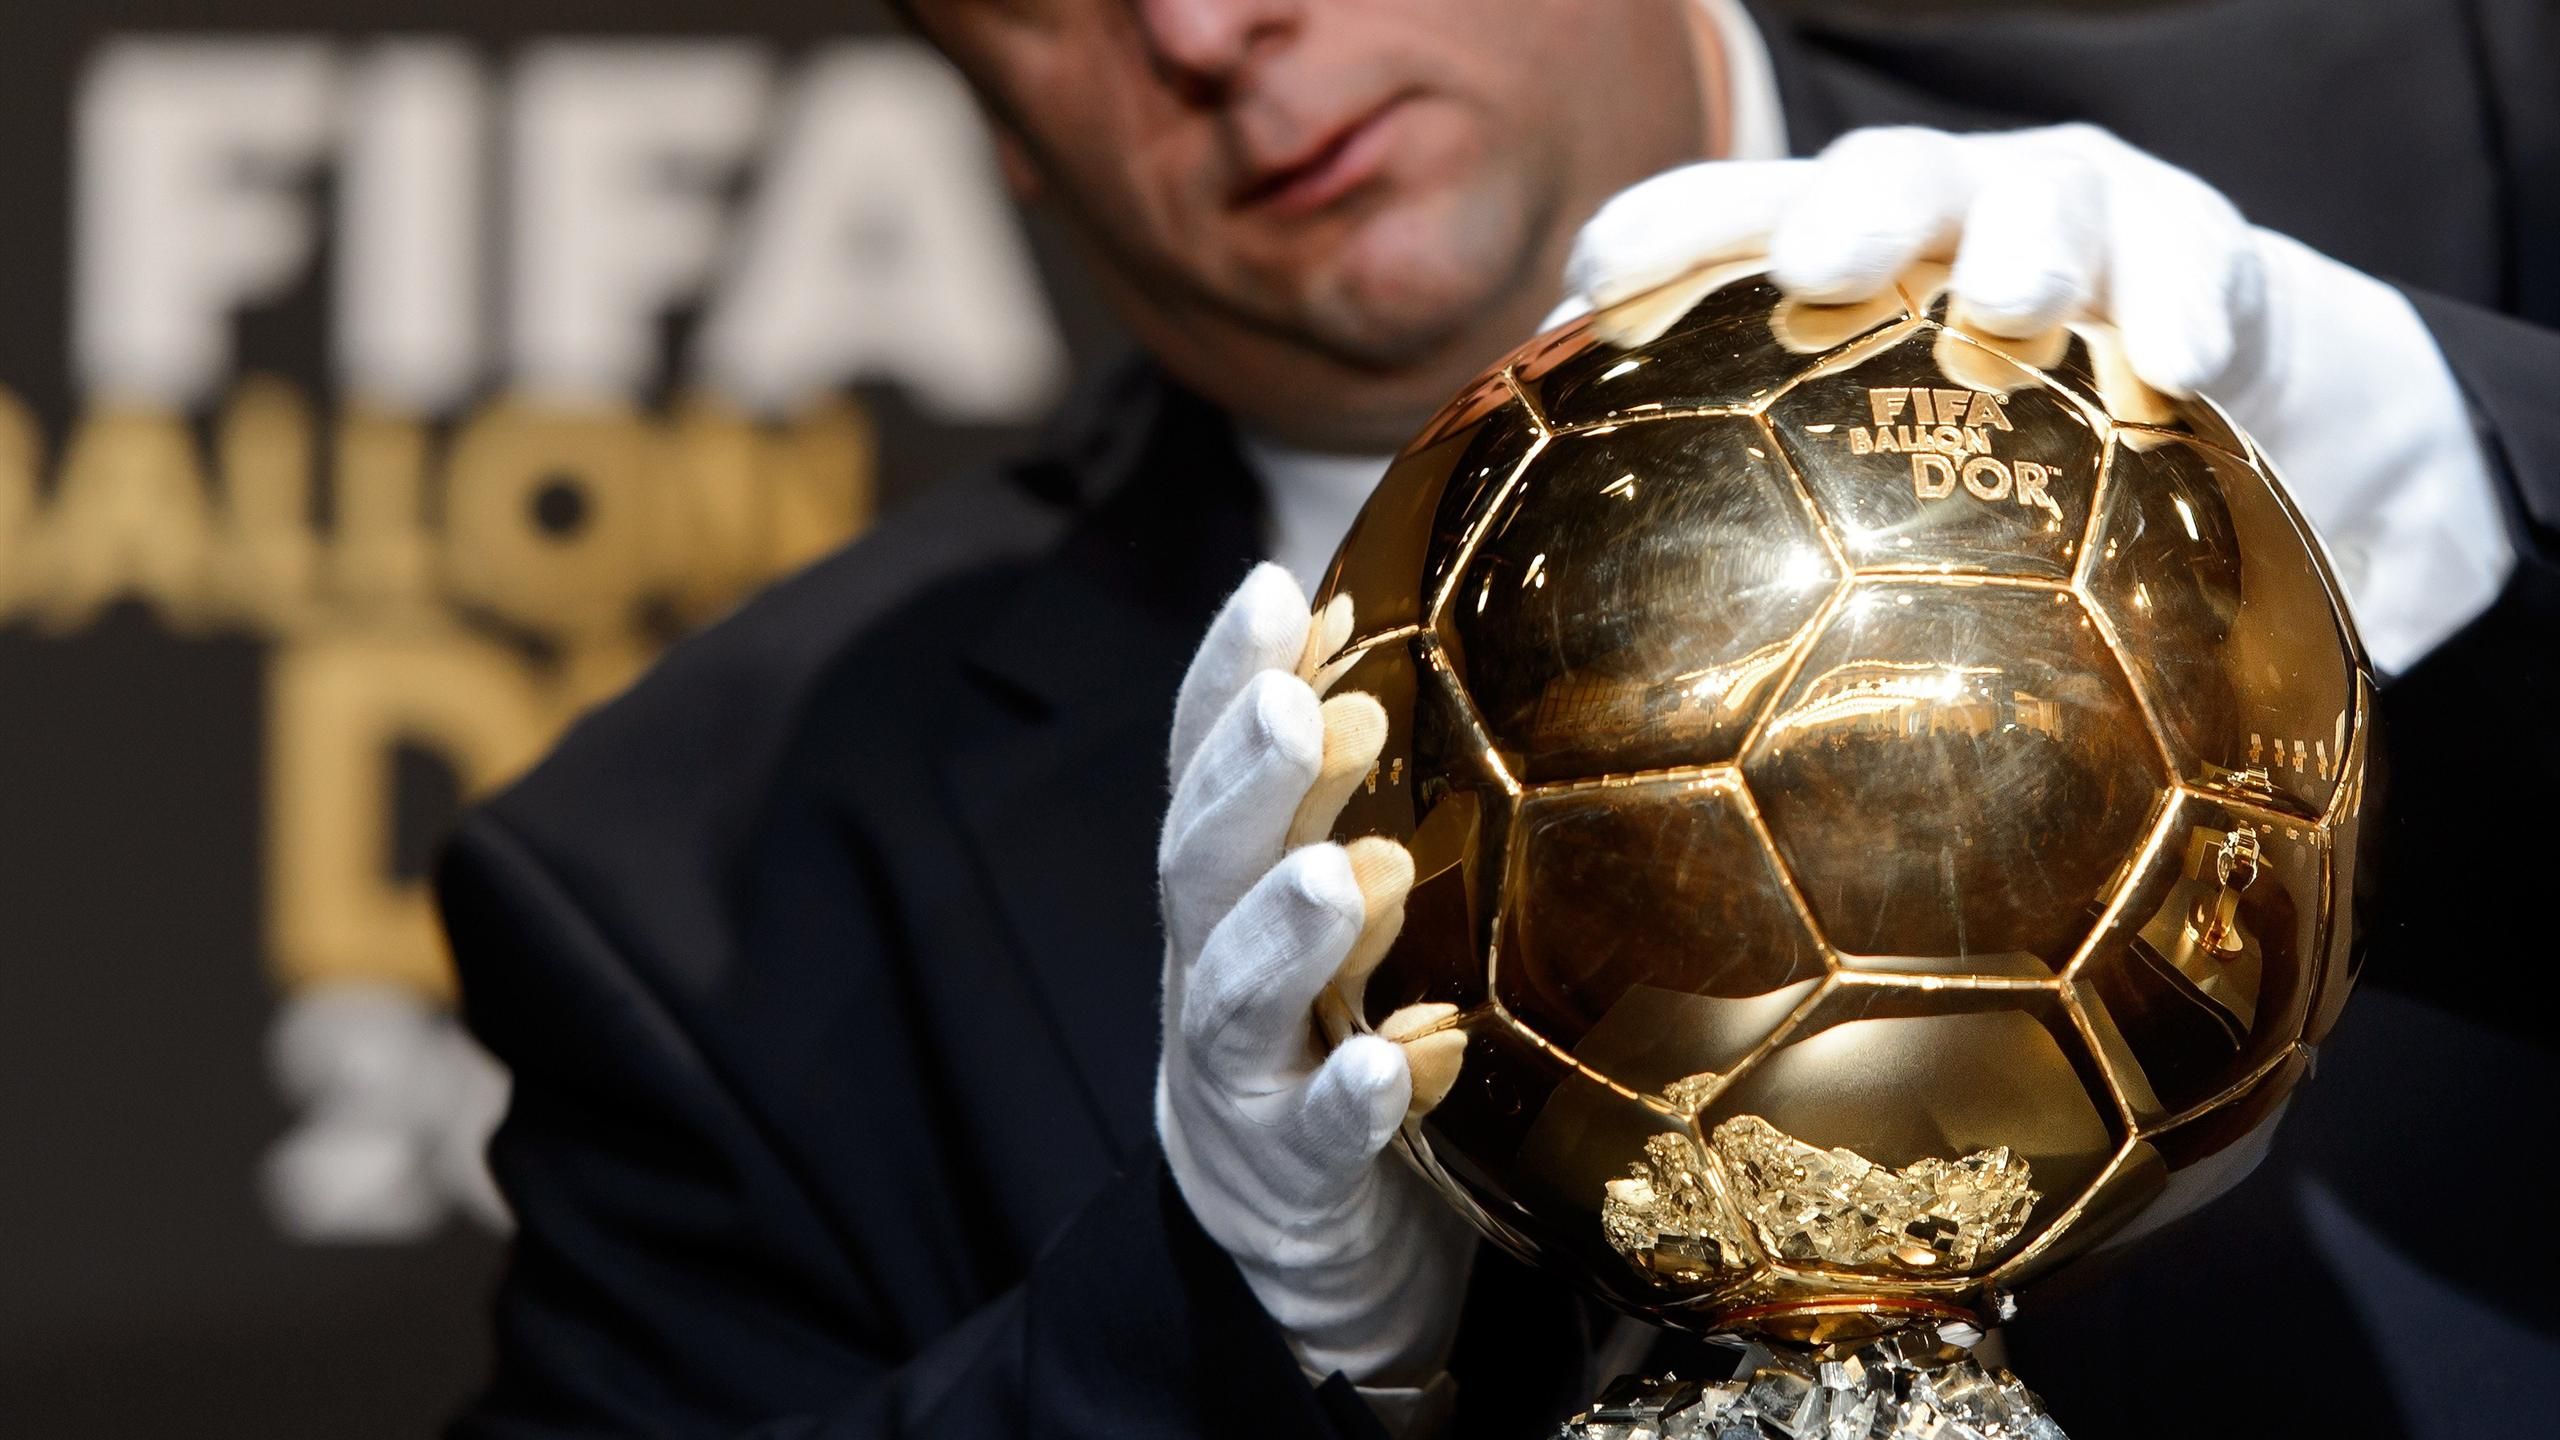 Voici le ballon officiel de la prochaine Ligue des champions 2015-2016